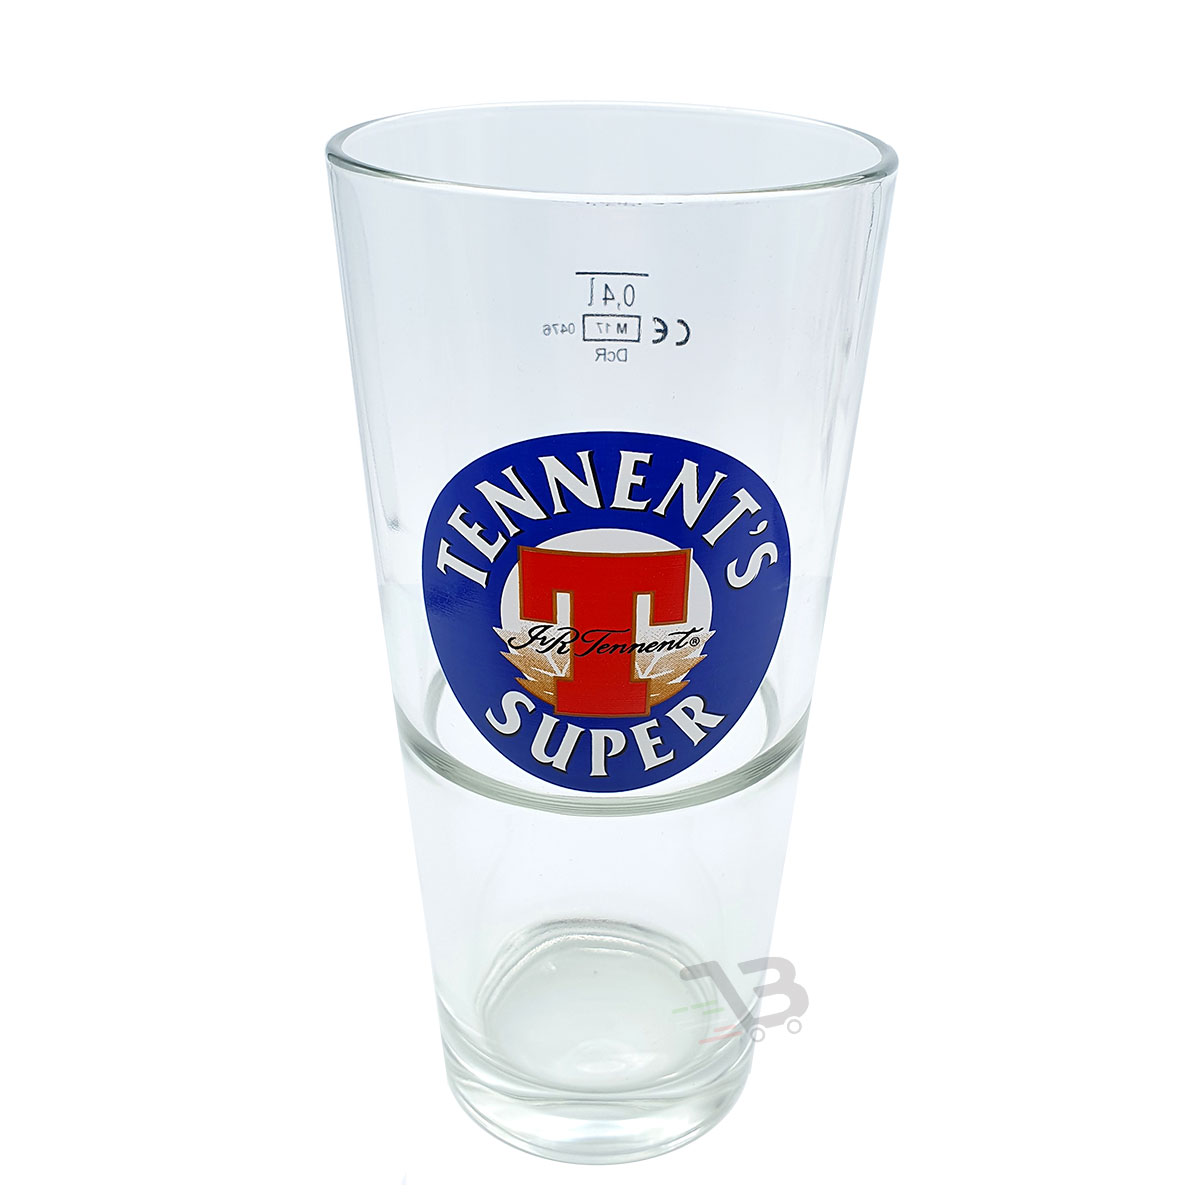 Bicchieri Tennent's Super 40cl x6 pz